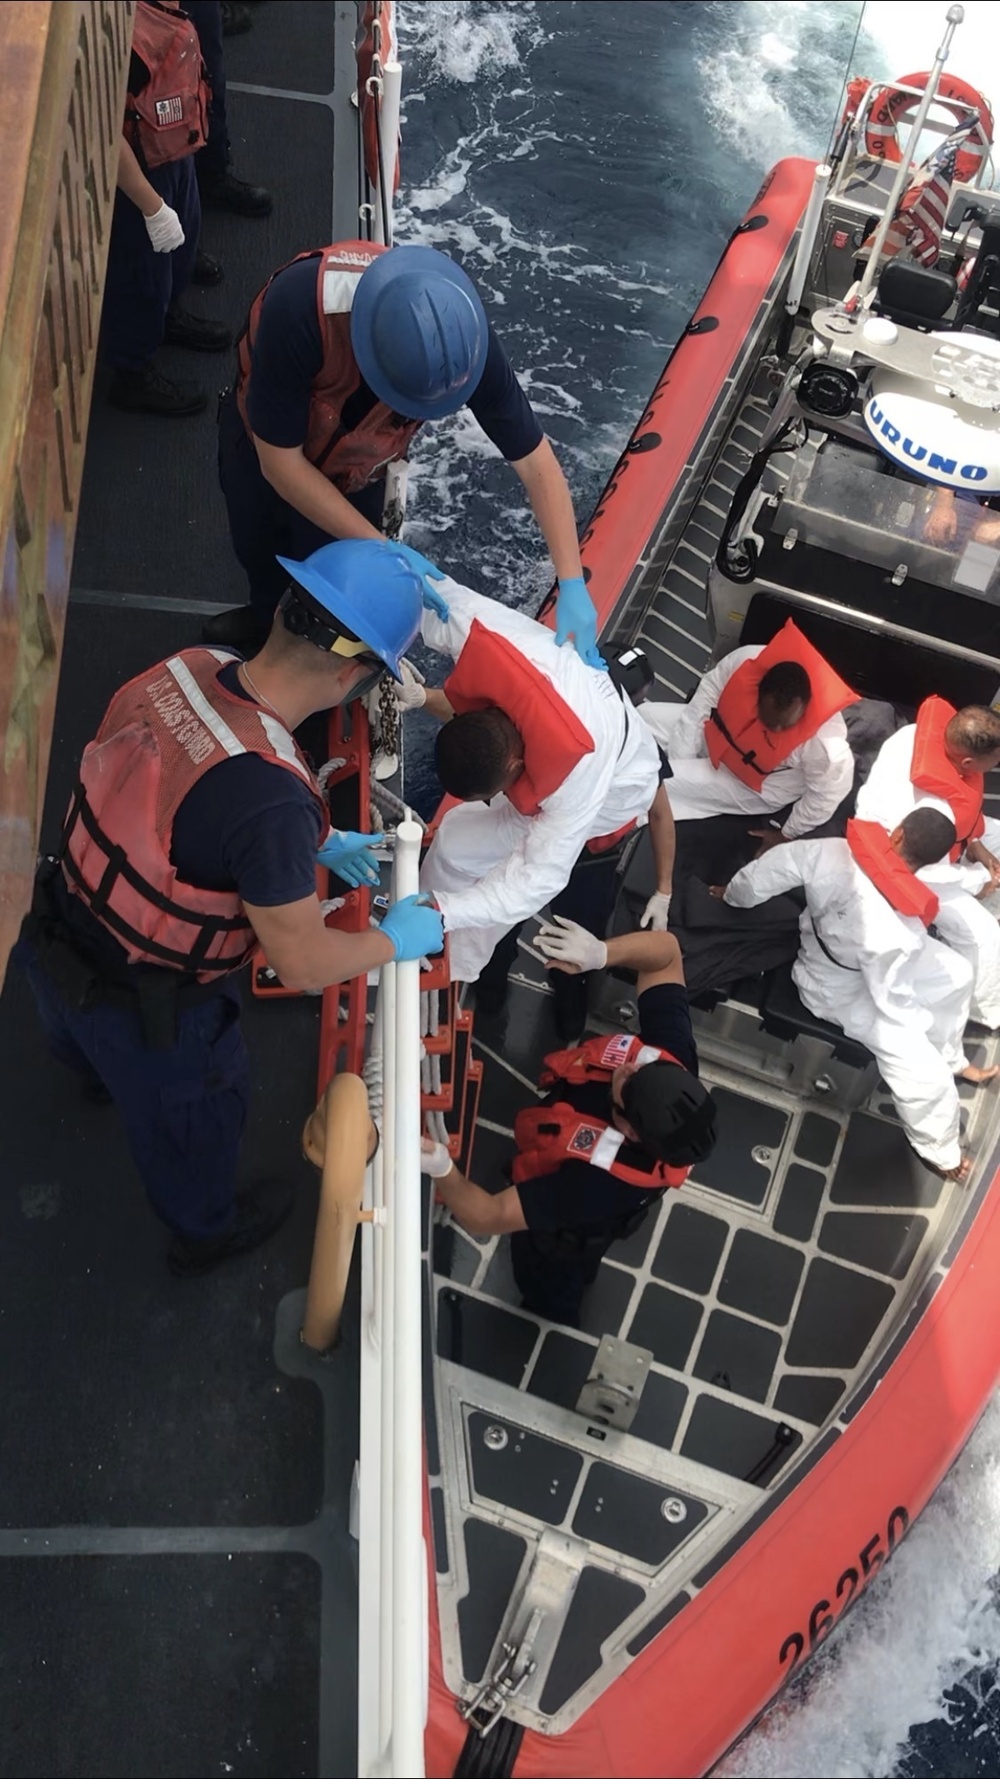 Coast Guard repatriates 12 migrants to the Dominican Republic, following at-sea interdiction of migrant vessel in the Mona Passage